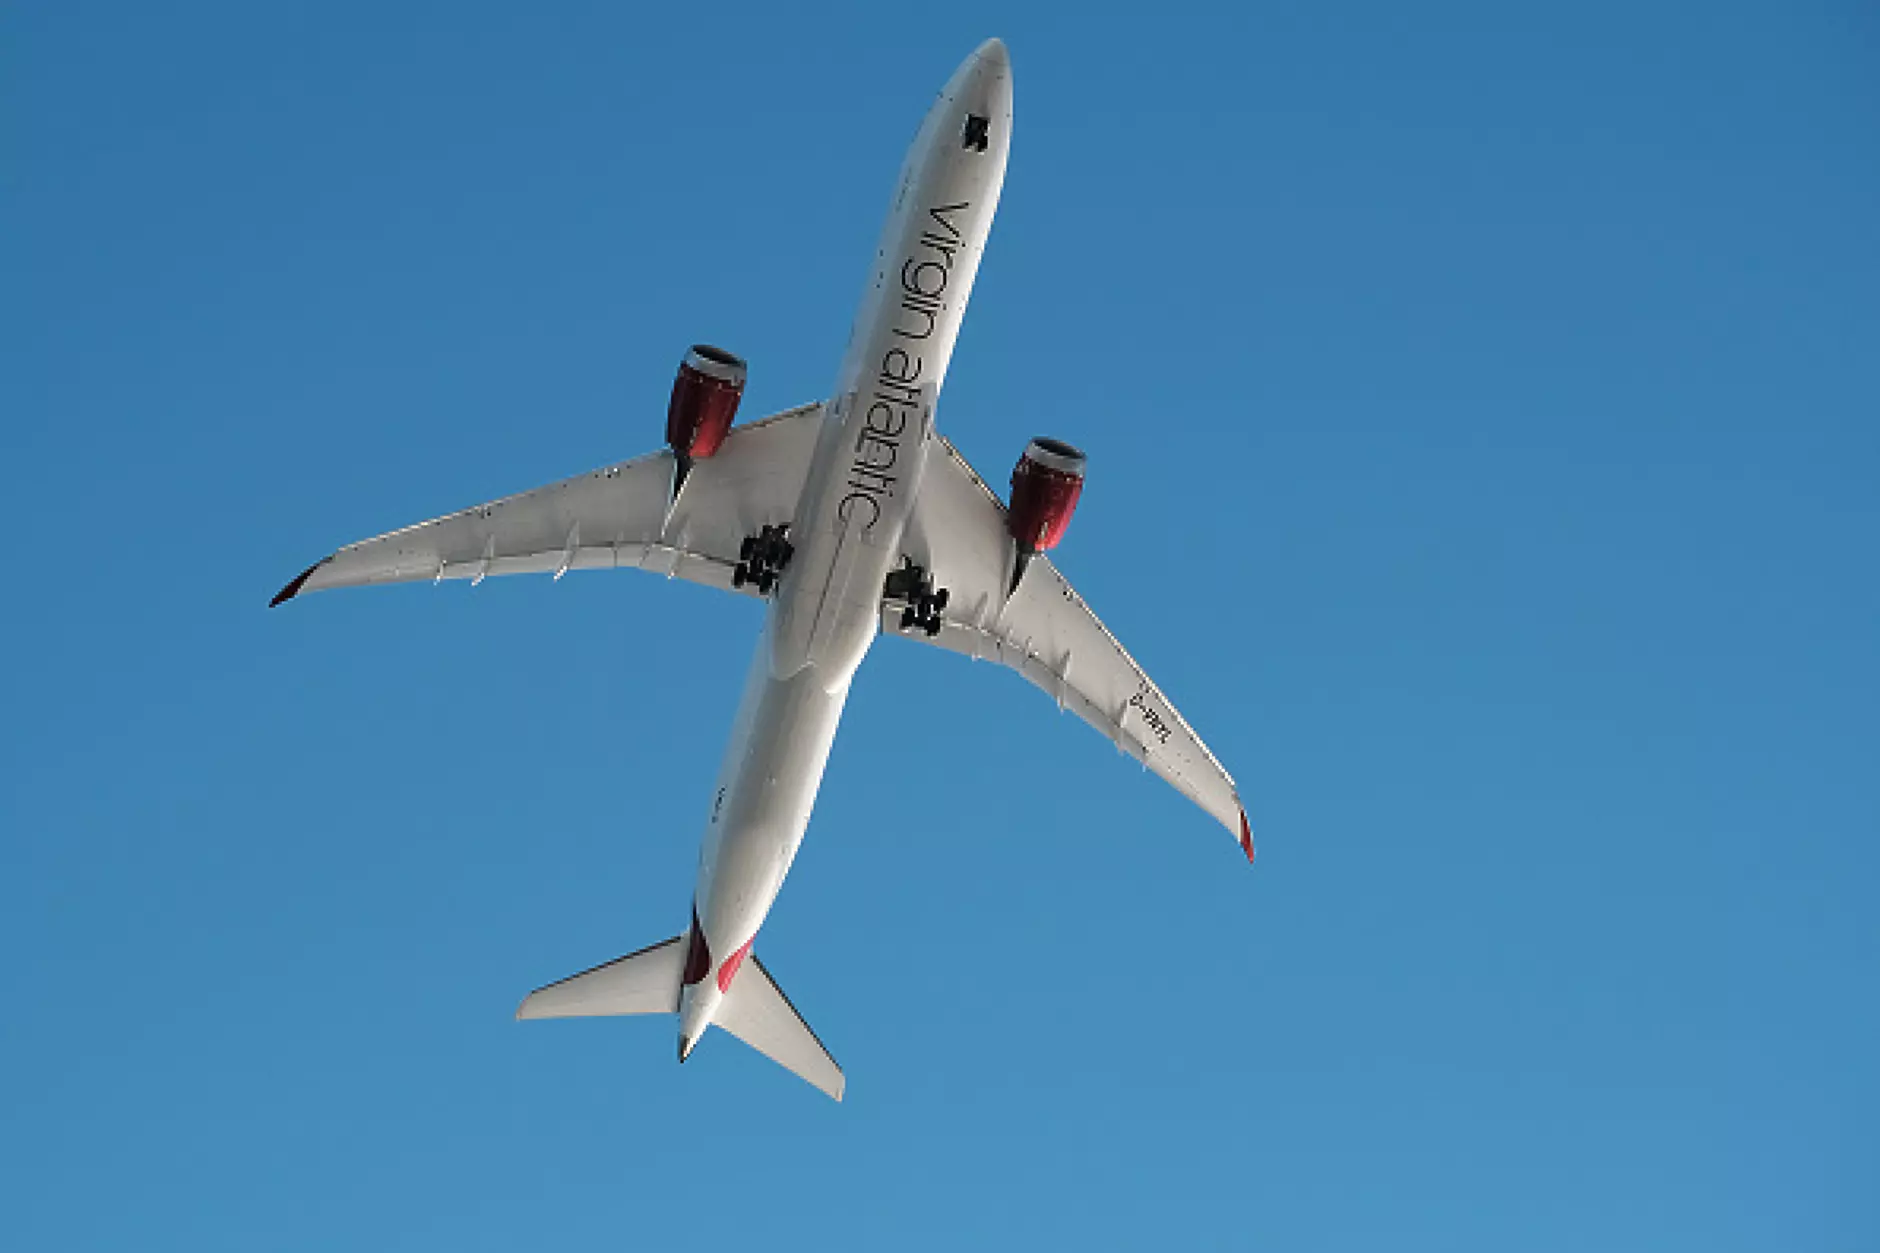 Virgin Atlantic ще извърши първия в света трансатлантически полет без керосин